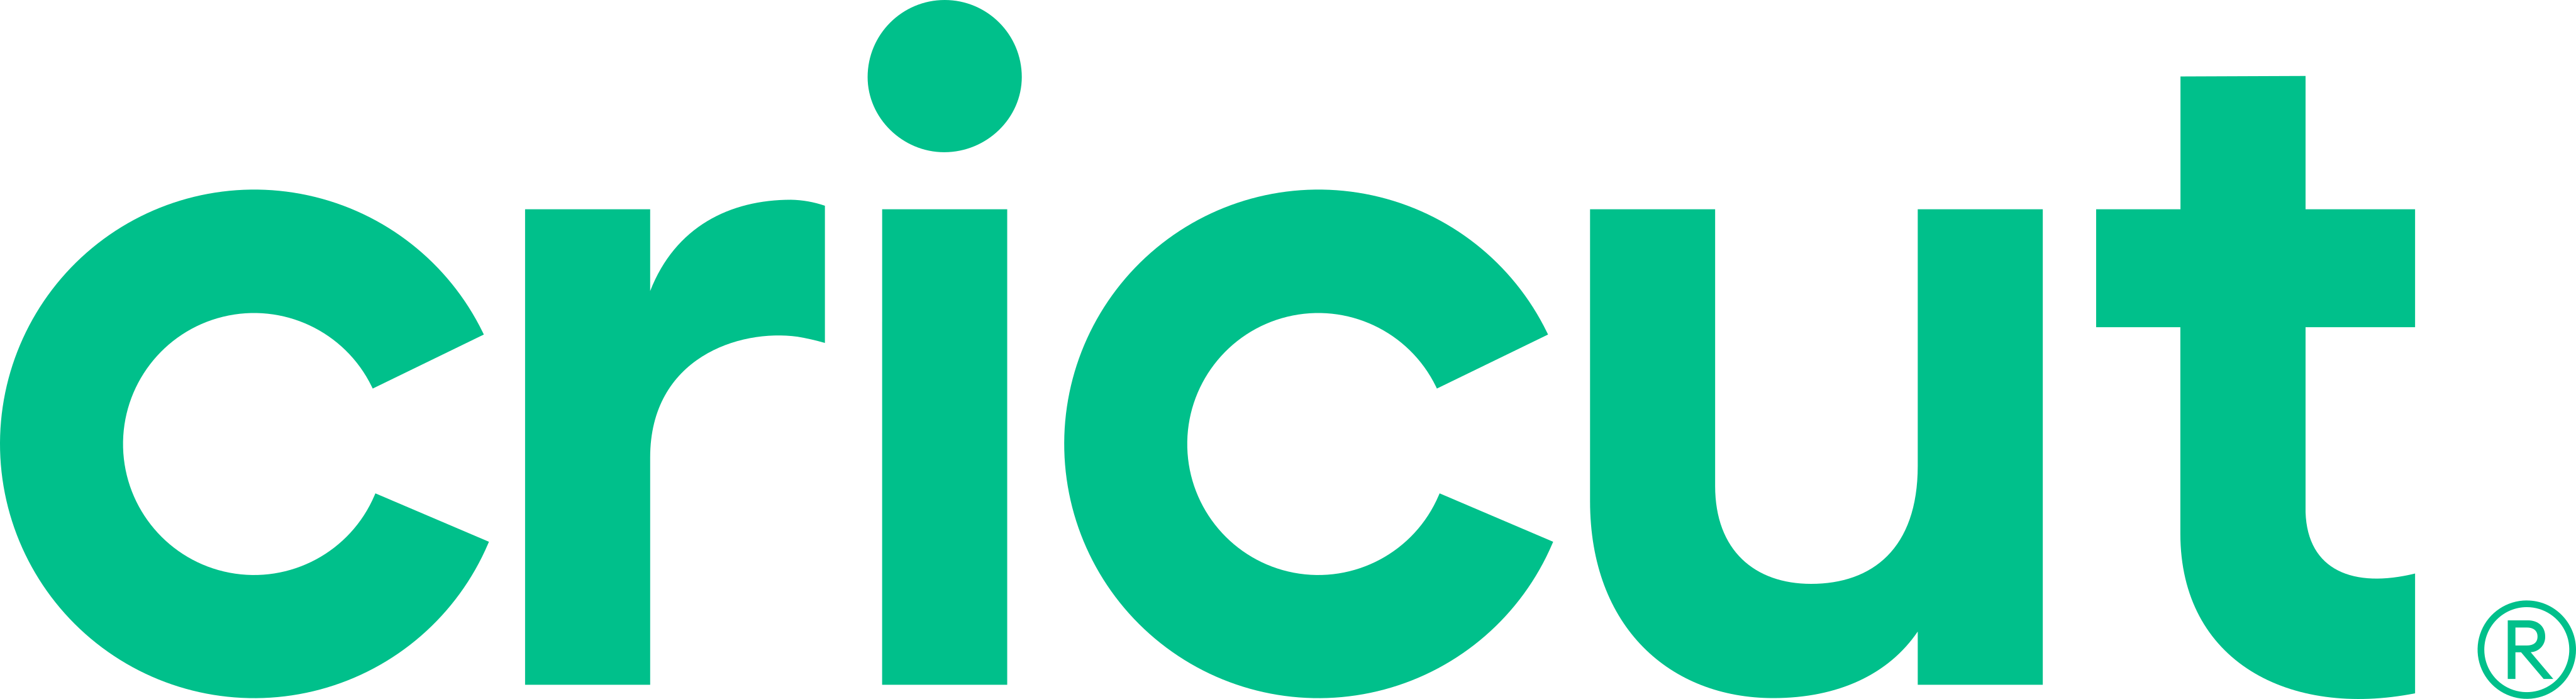 cricut logo - Cricut Logo